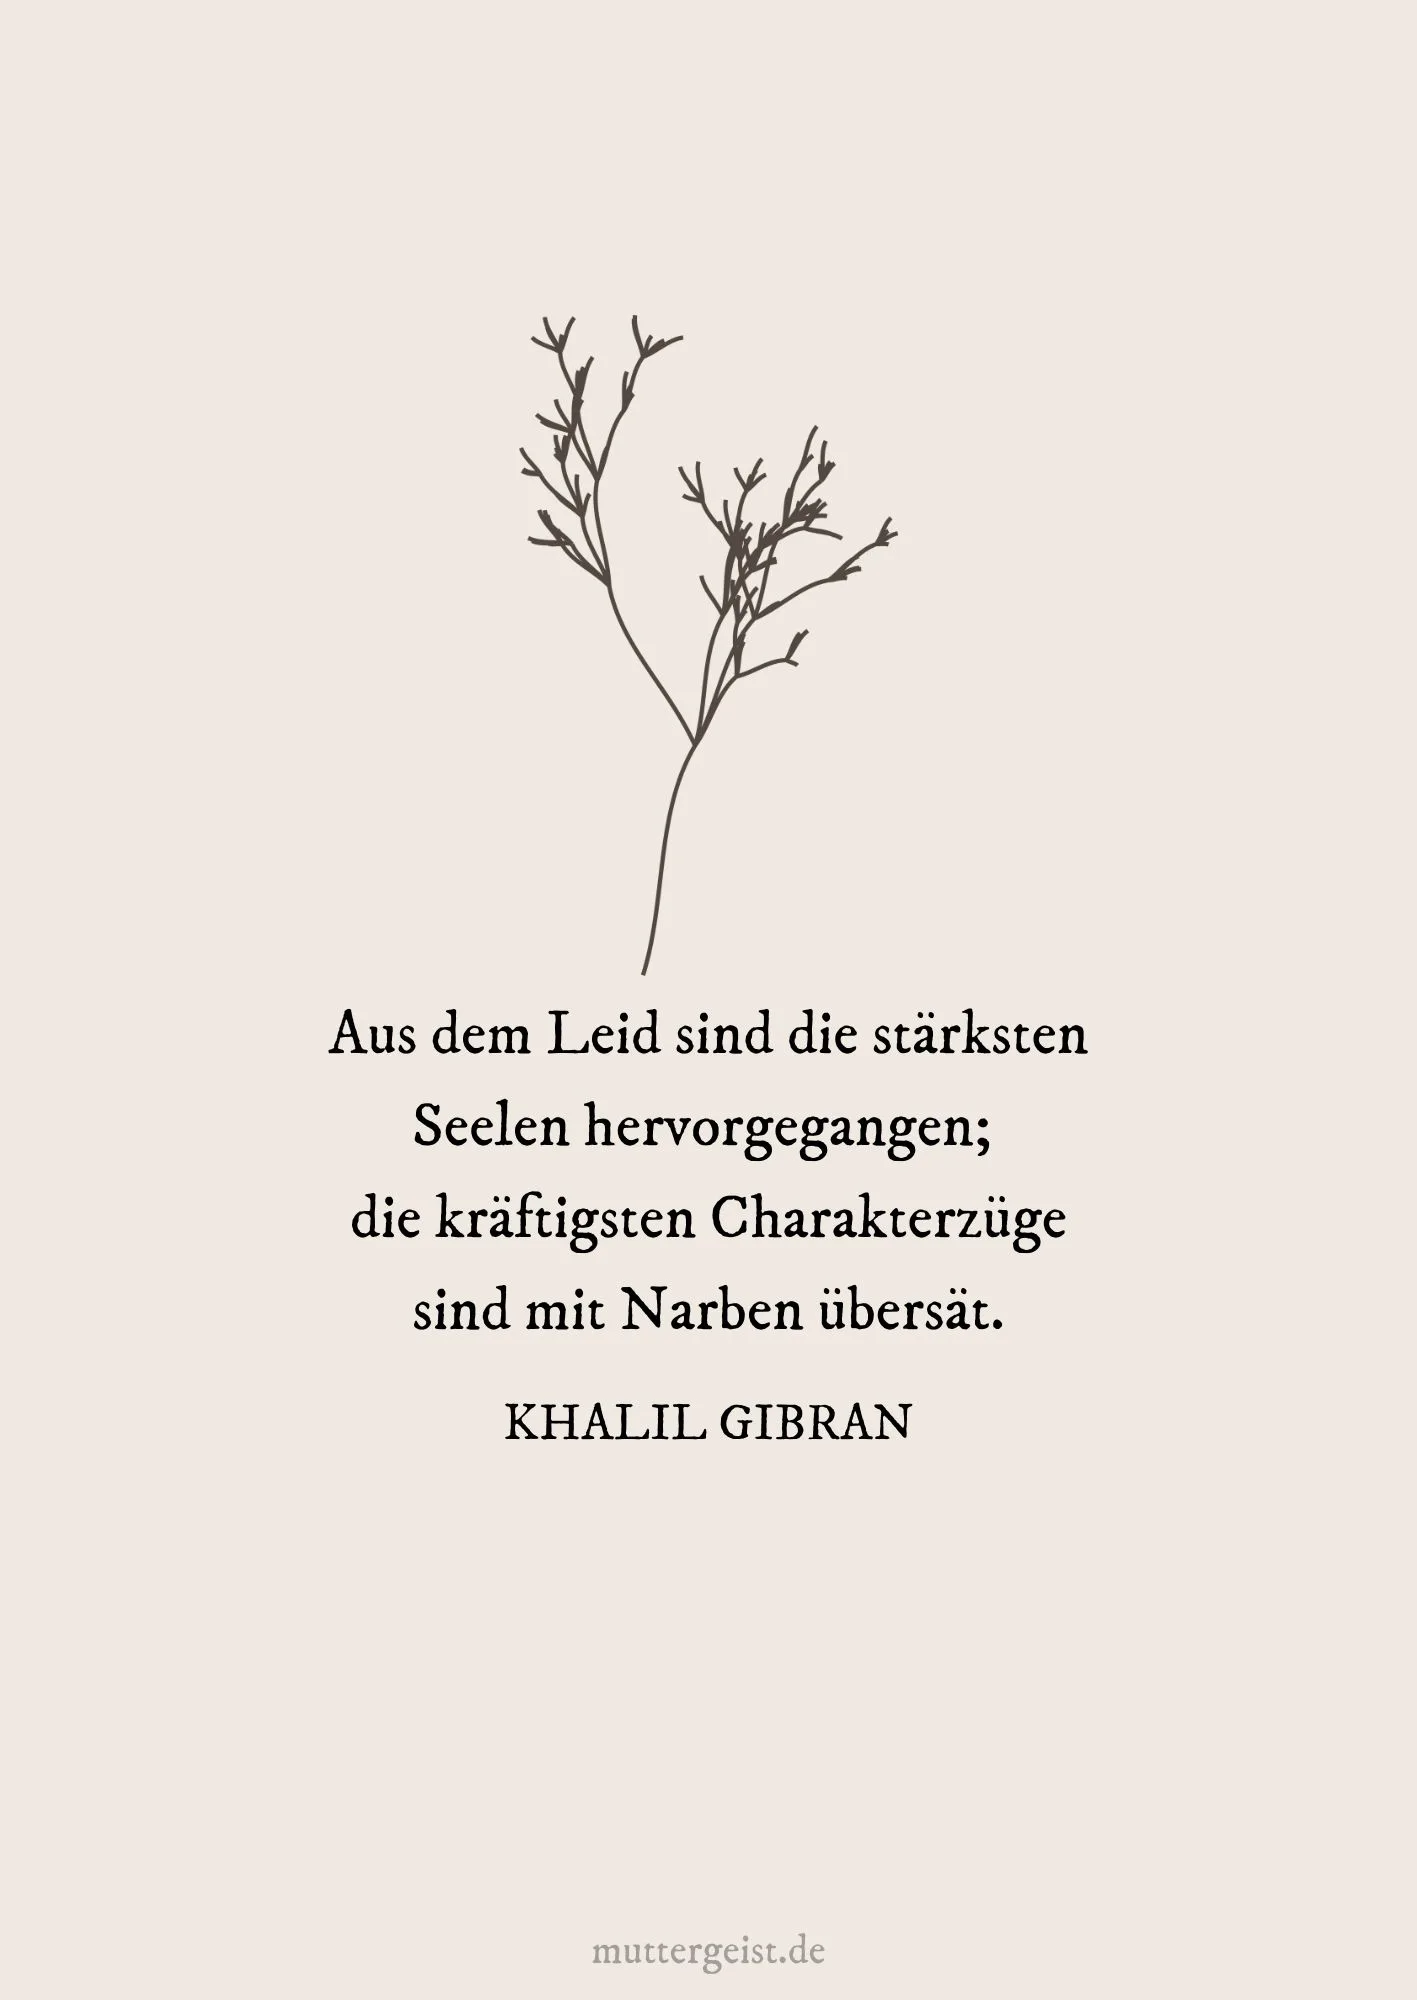 Zitat von Khalil Gibran über die Seele